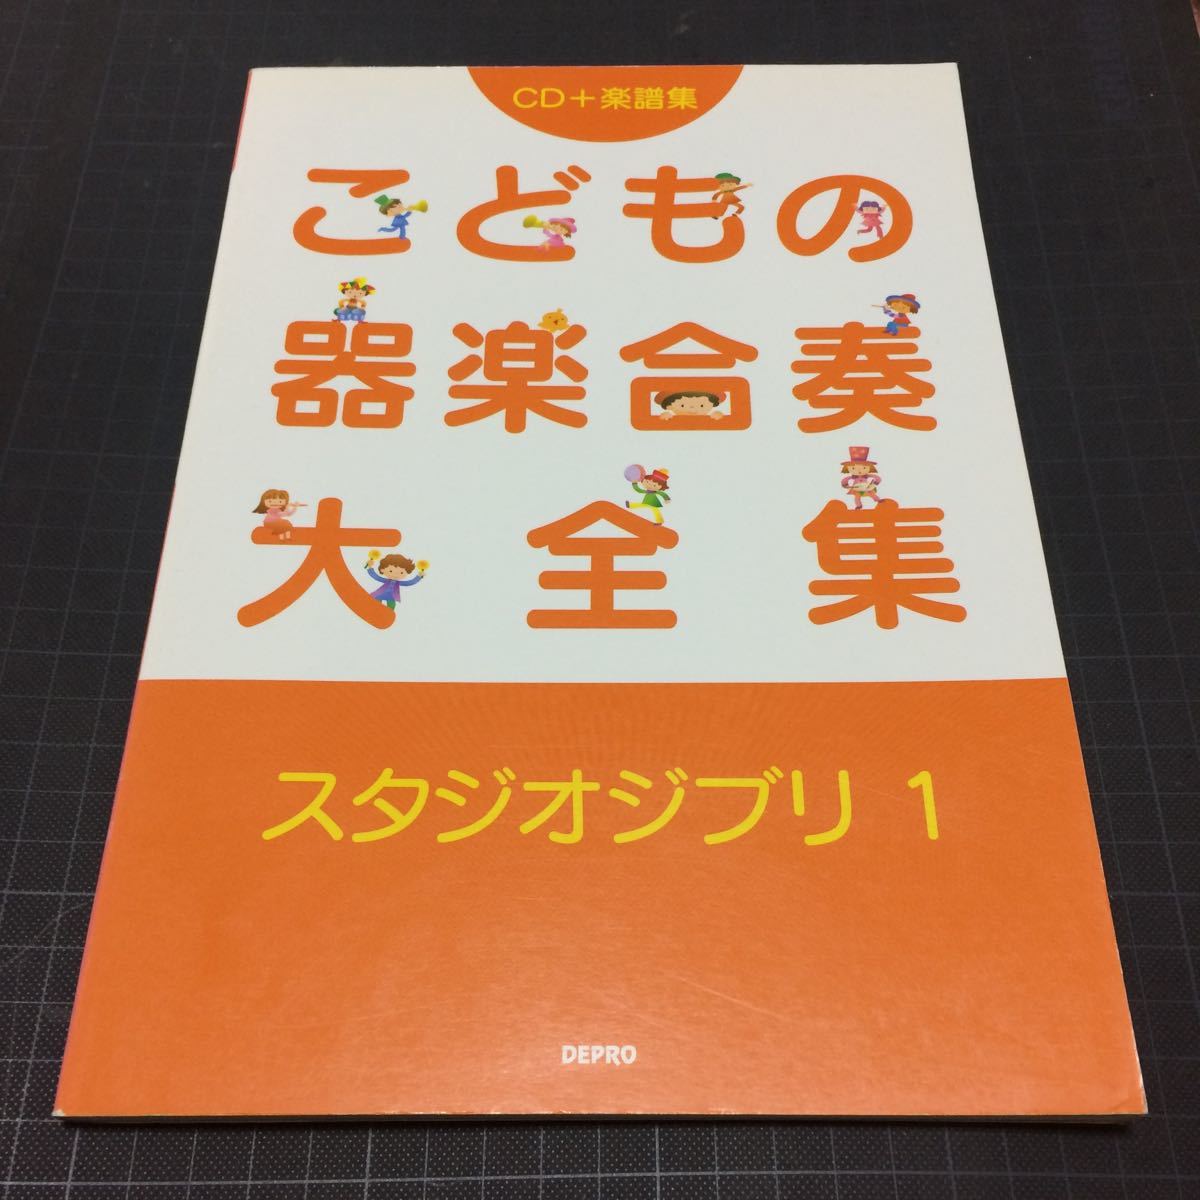 ko. было использовано инструментальная музыка концерт большой полное собрание сочинений Studio Ghibli 1 CD+ музыкальное сопровождение сборник CD нераспечатанный 